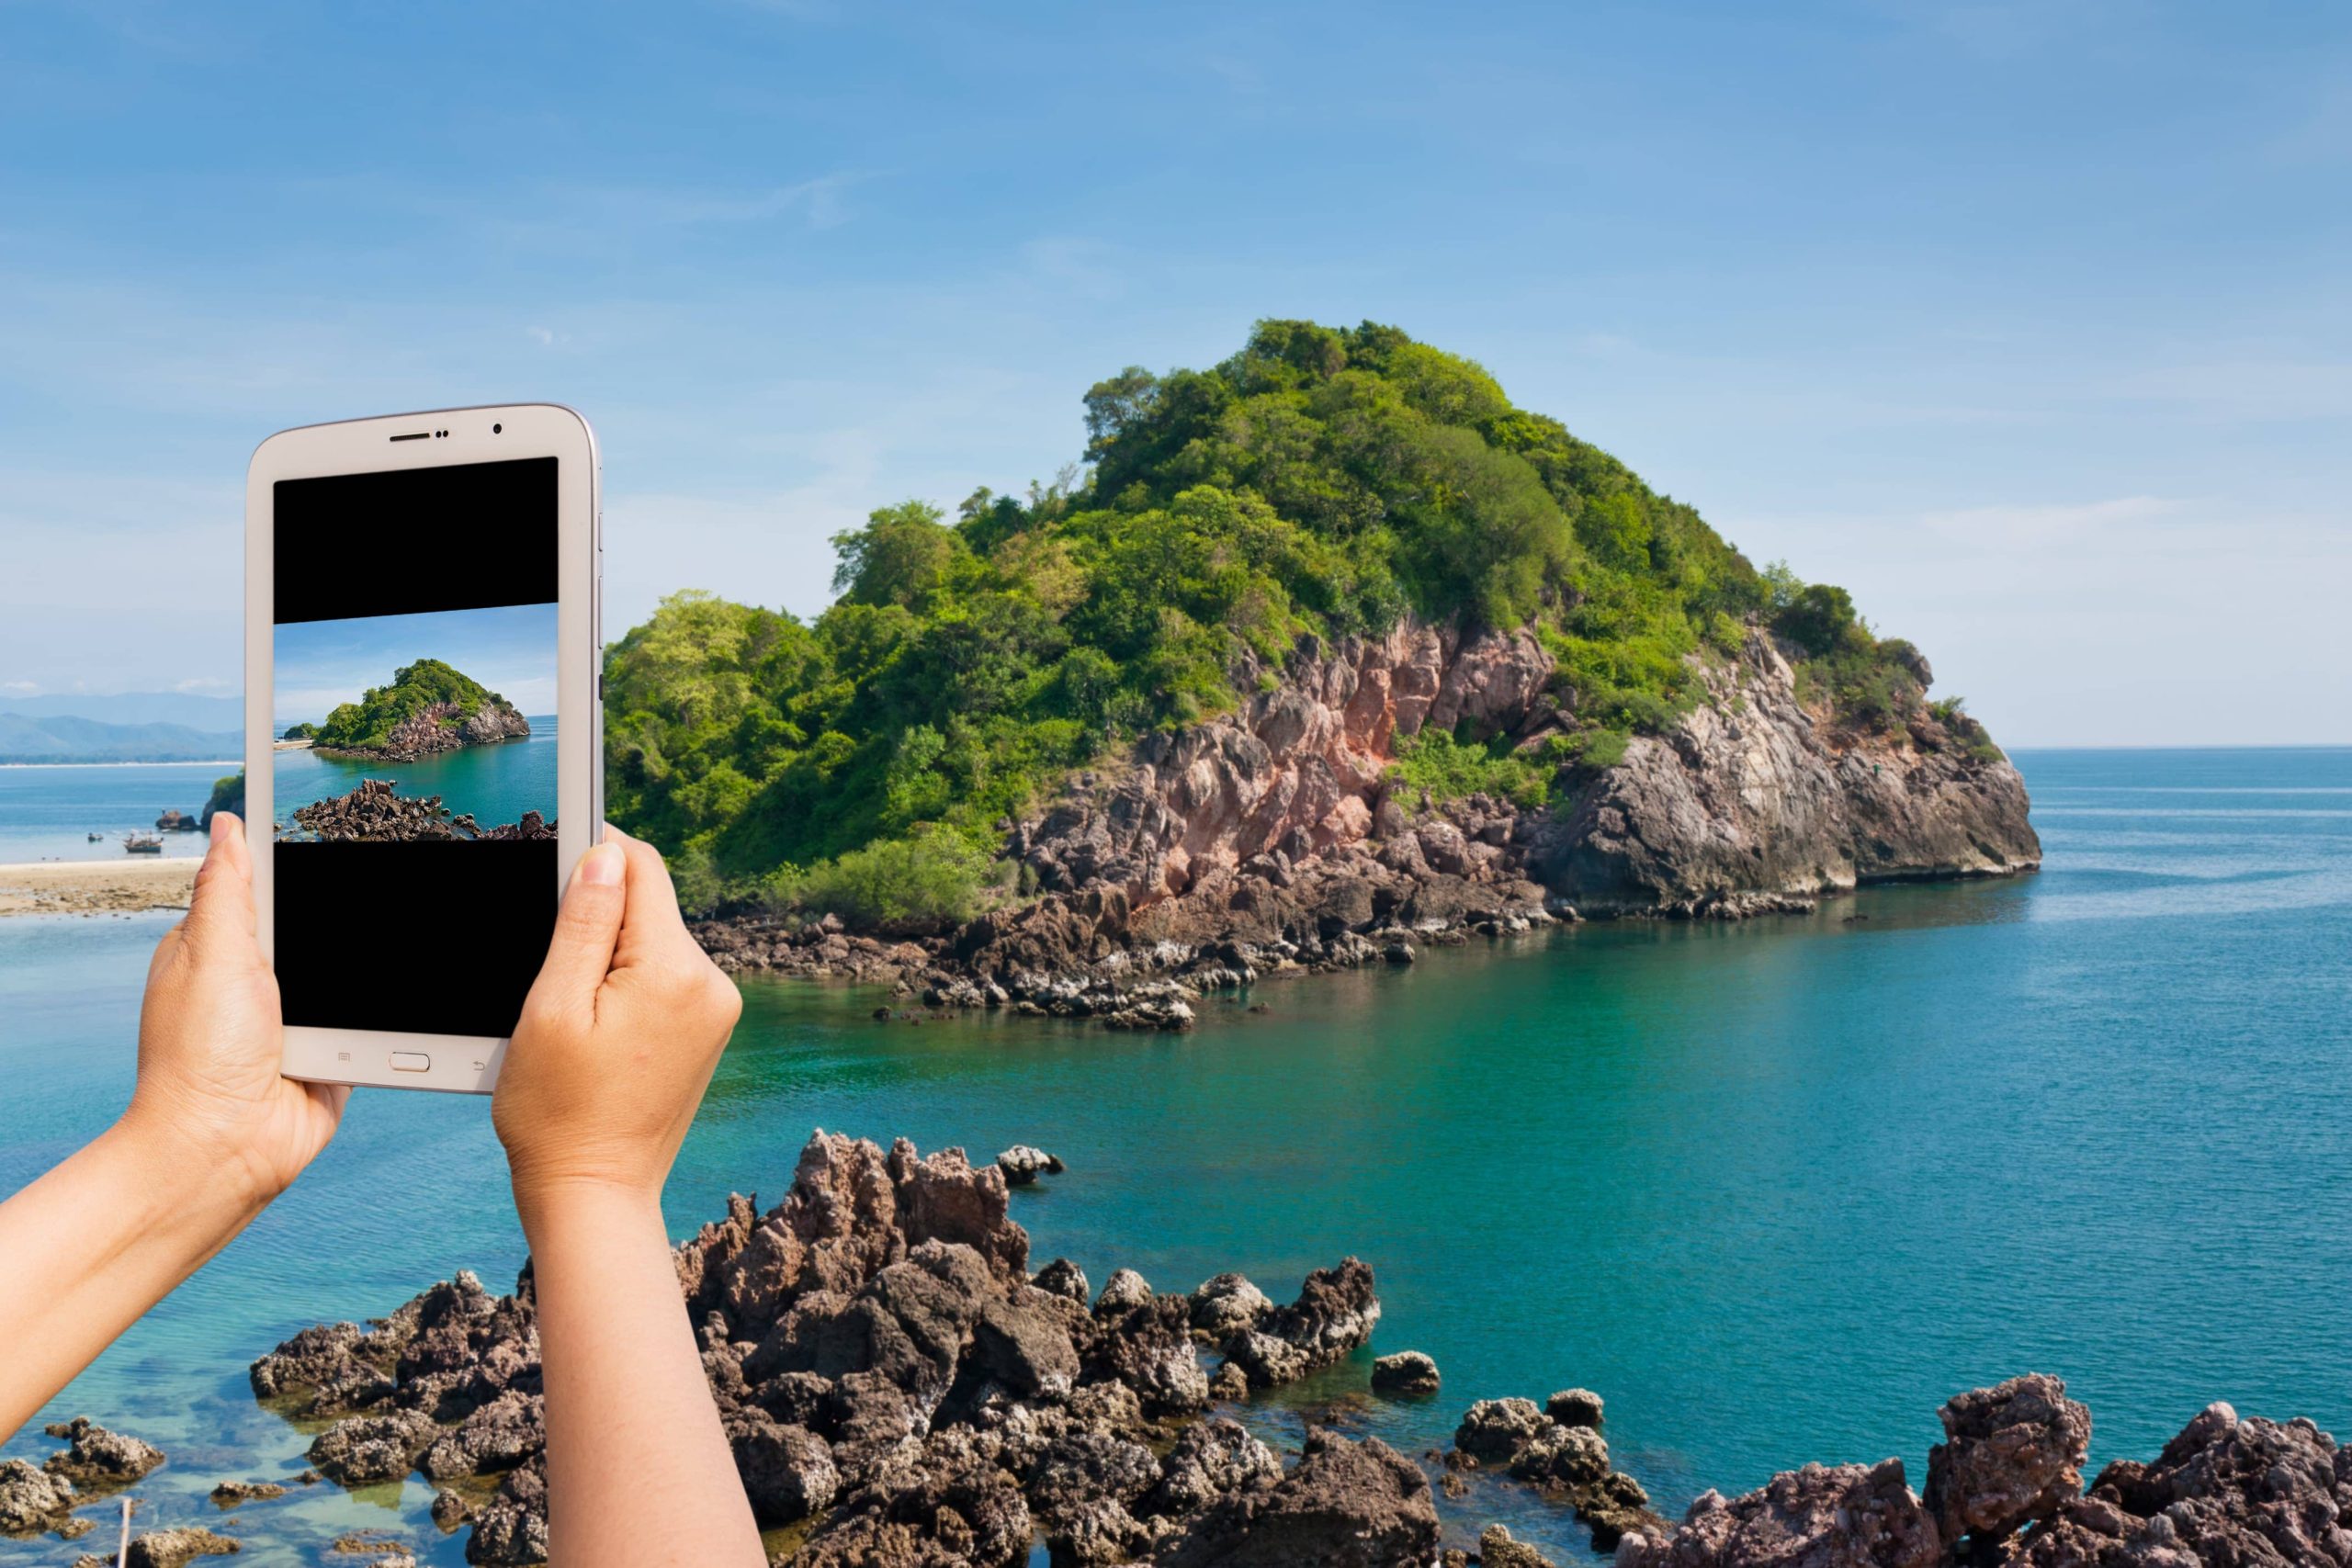 Take photo beauty island by tablet; Shutterstock ID 169910513